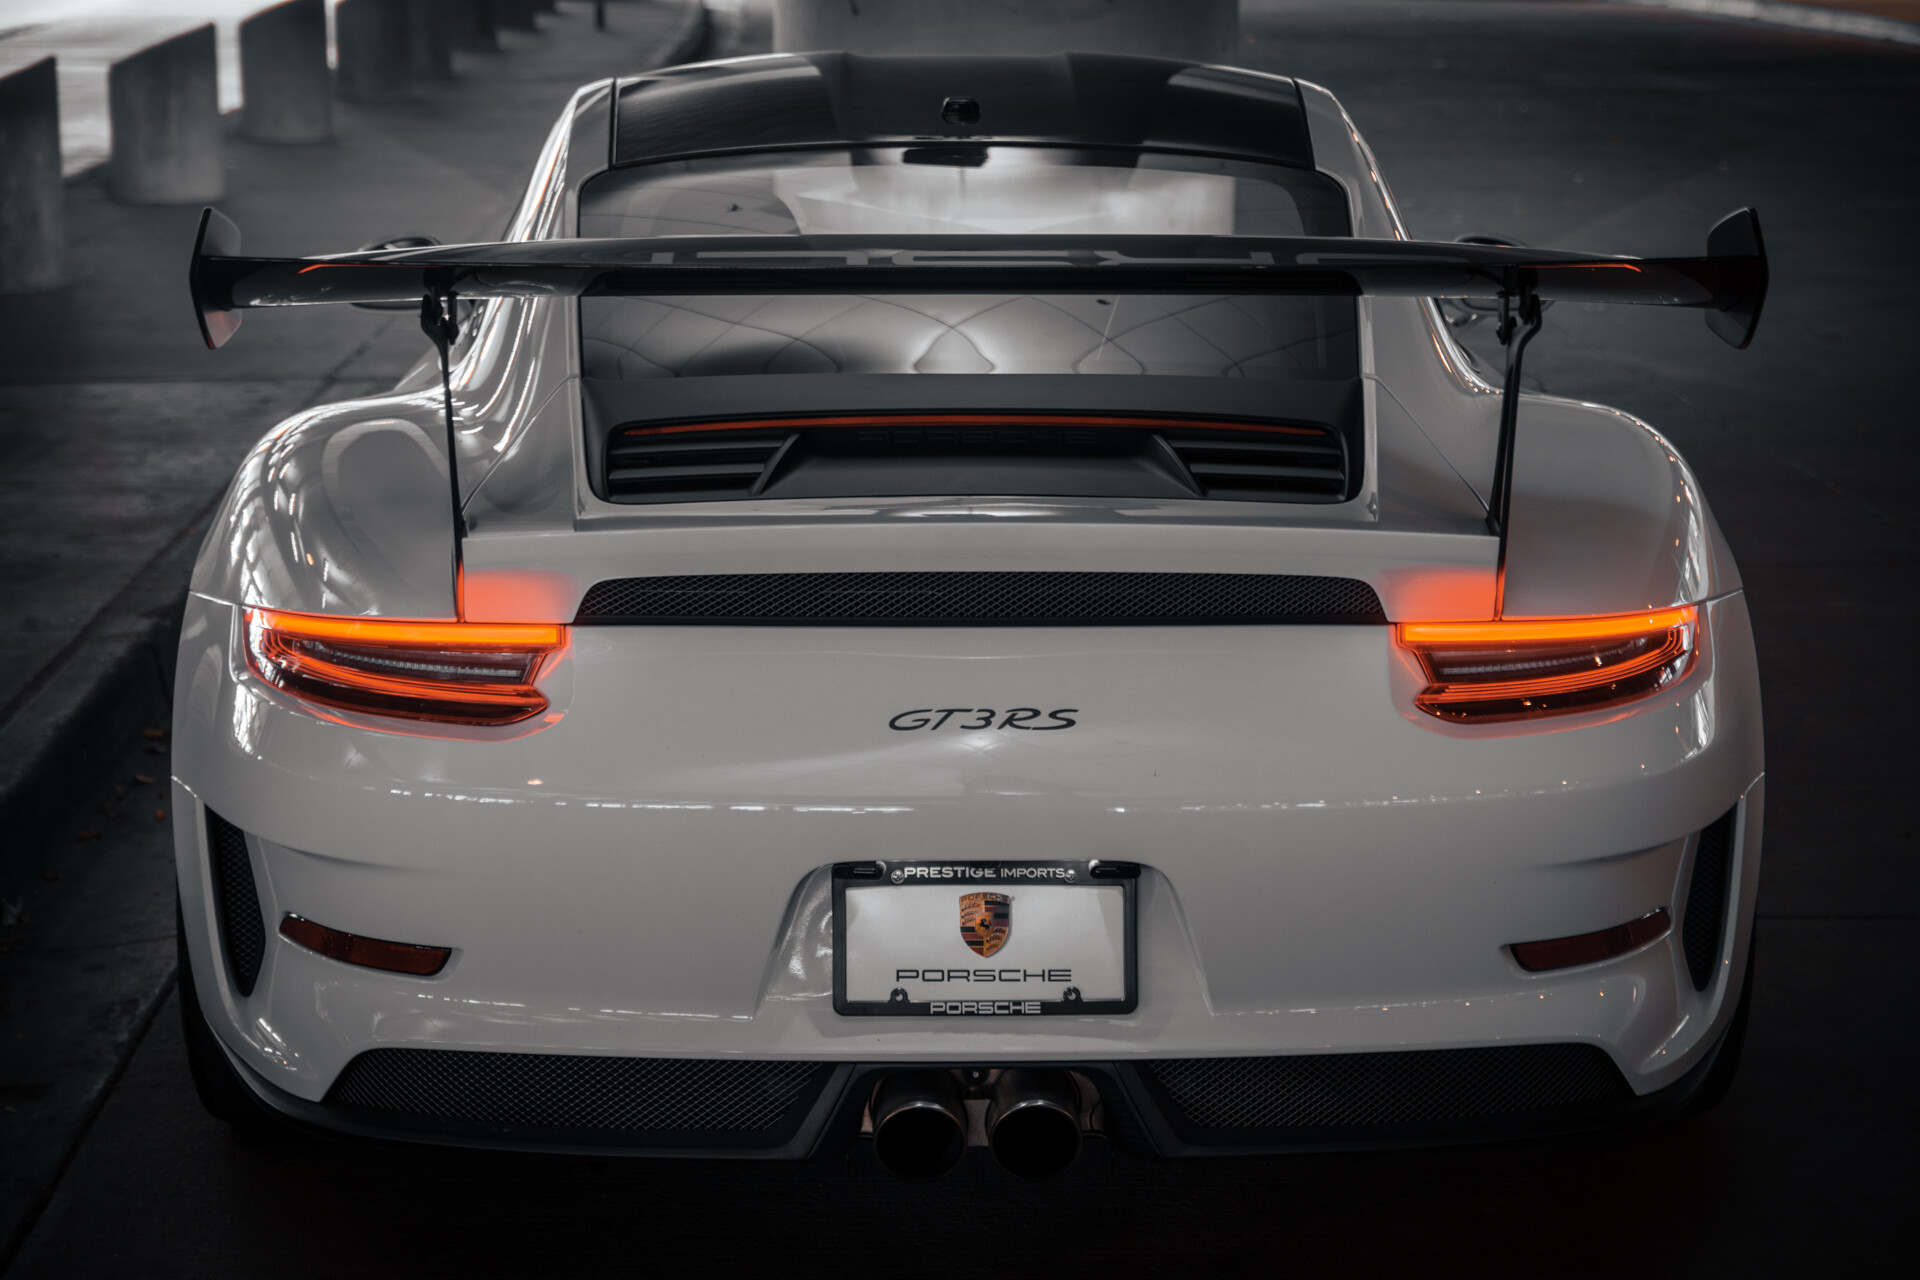 Porsche Gt3 Rs 2019 Wallpapers